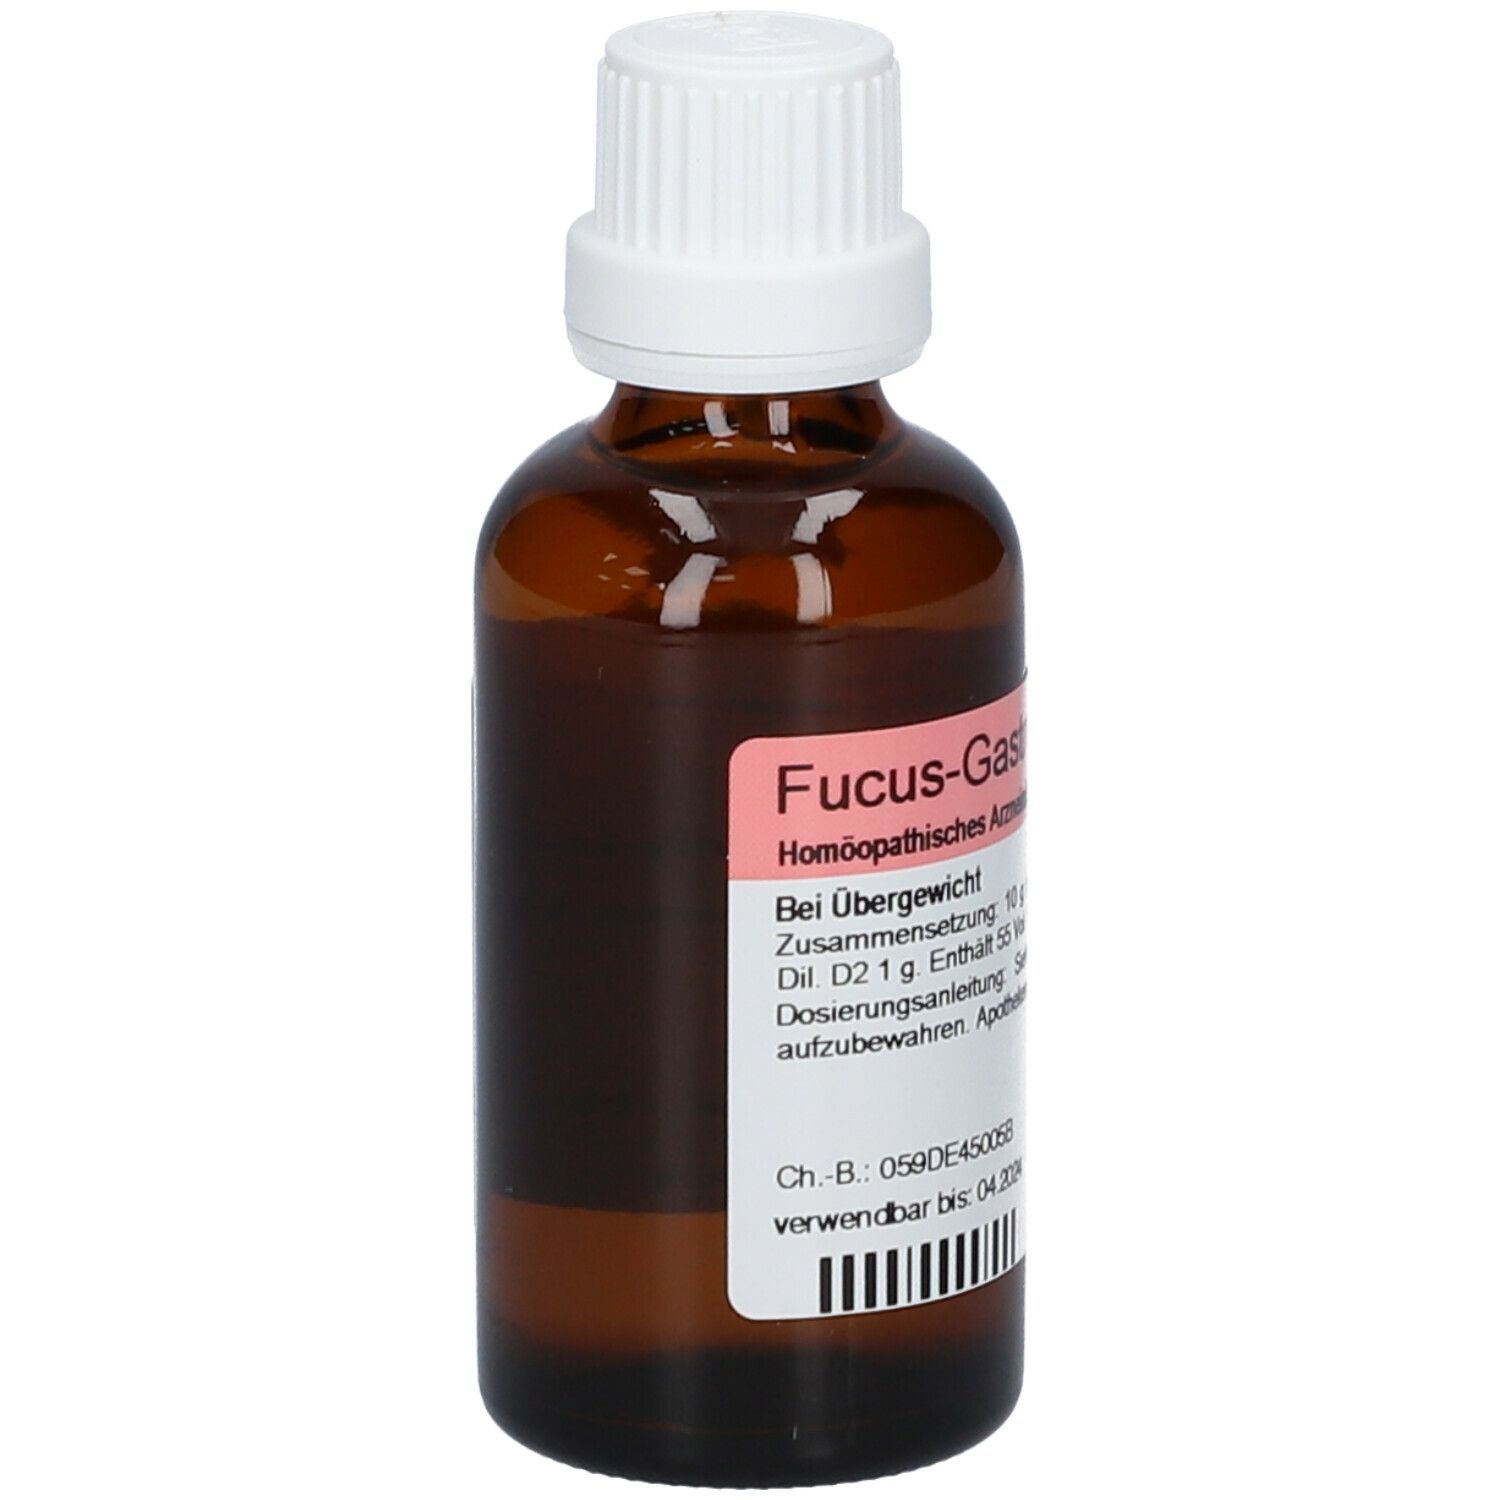 Fucus-Gastreu® S R59